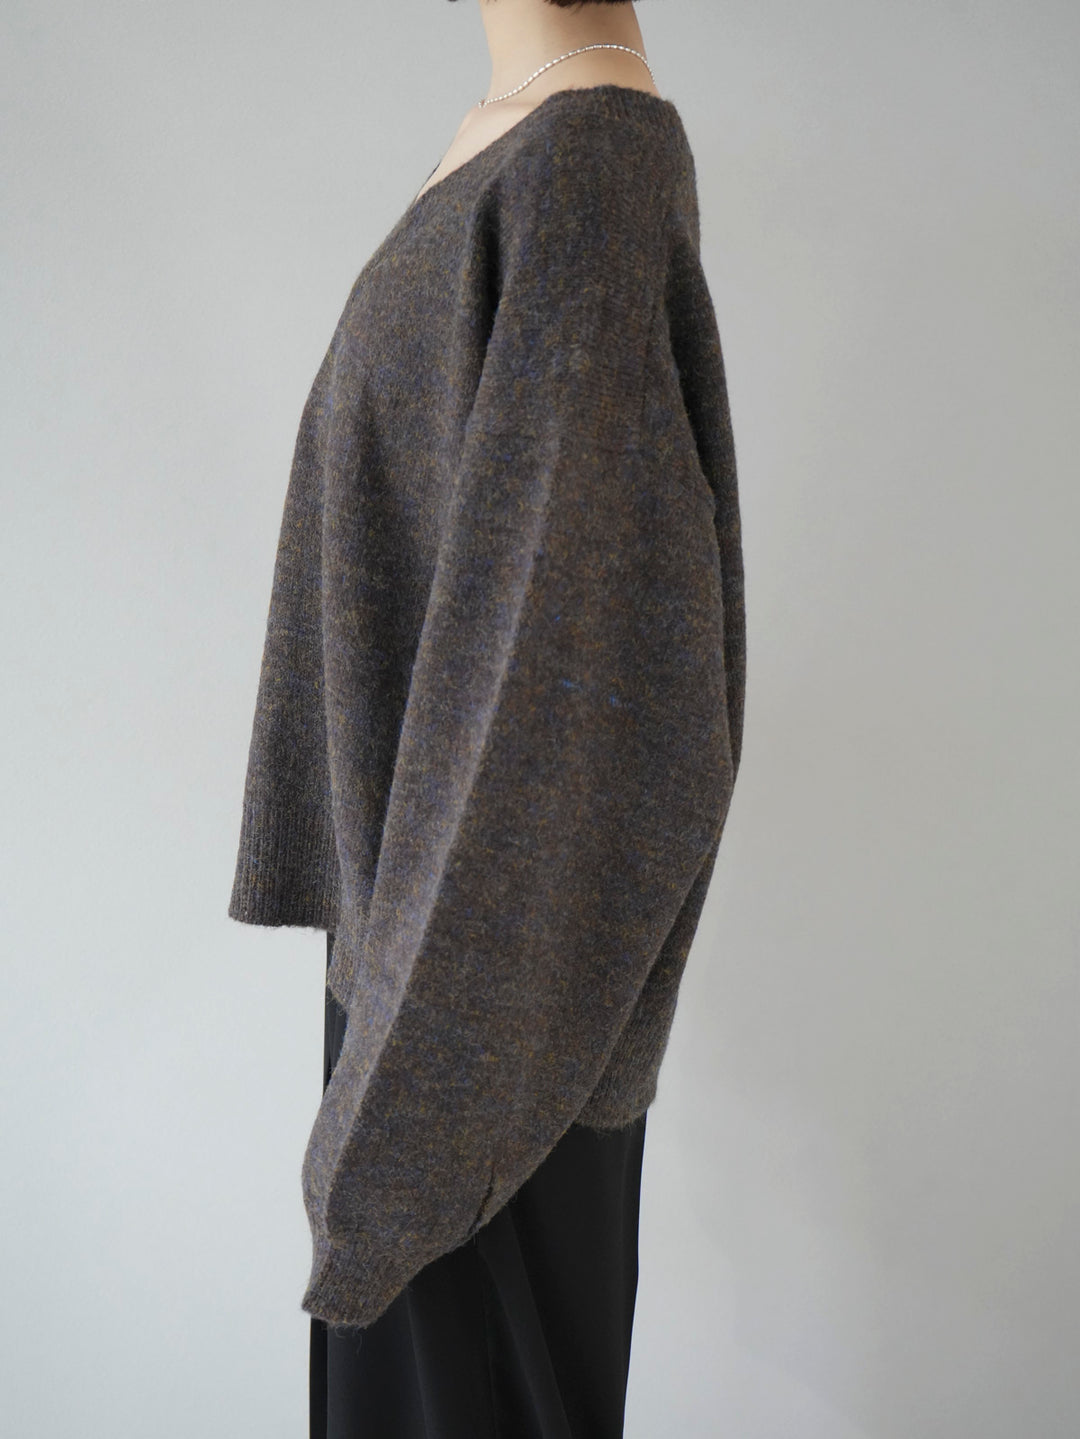 [Pre-order] Mixed yarn melange V-neck knit pullover/brown